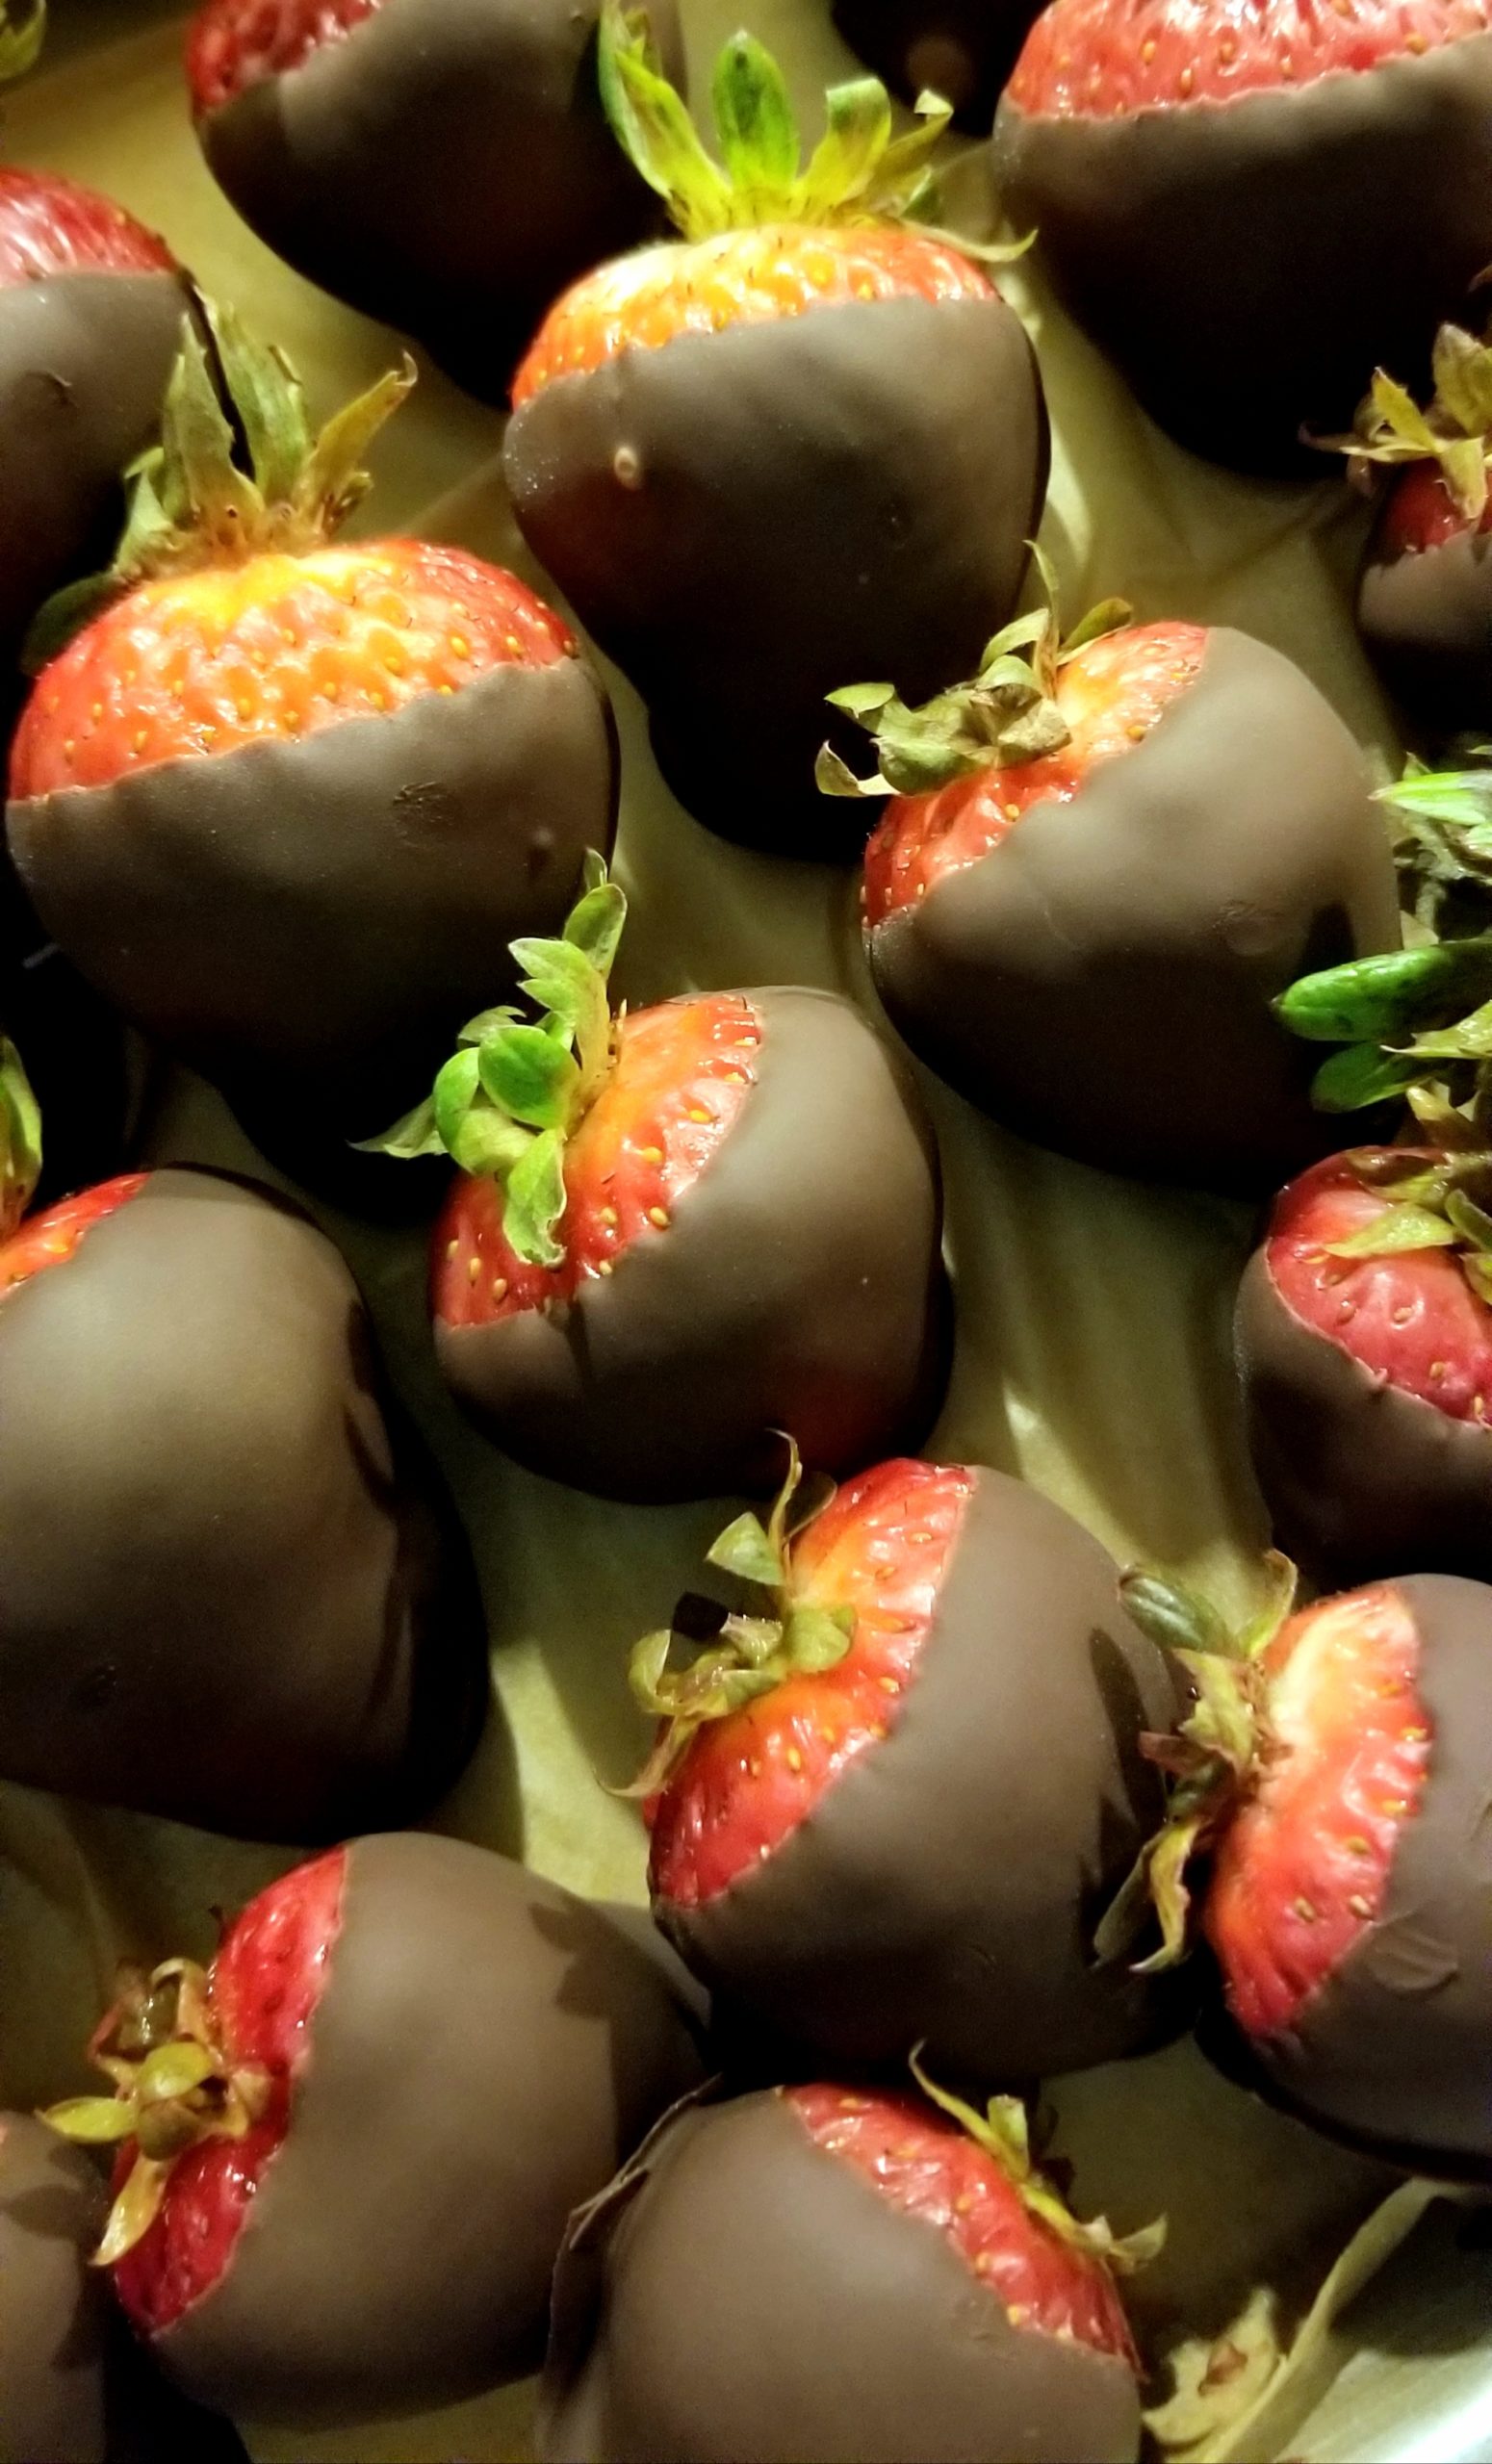 Jessica Craig's chocolate covered strawberries.